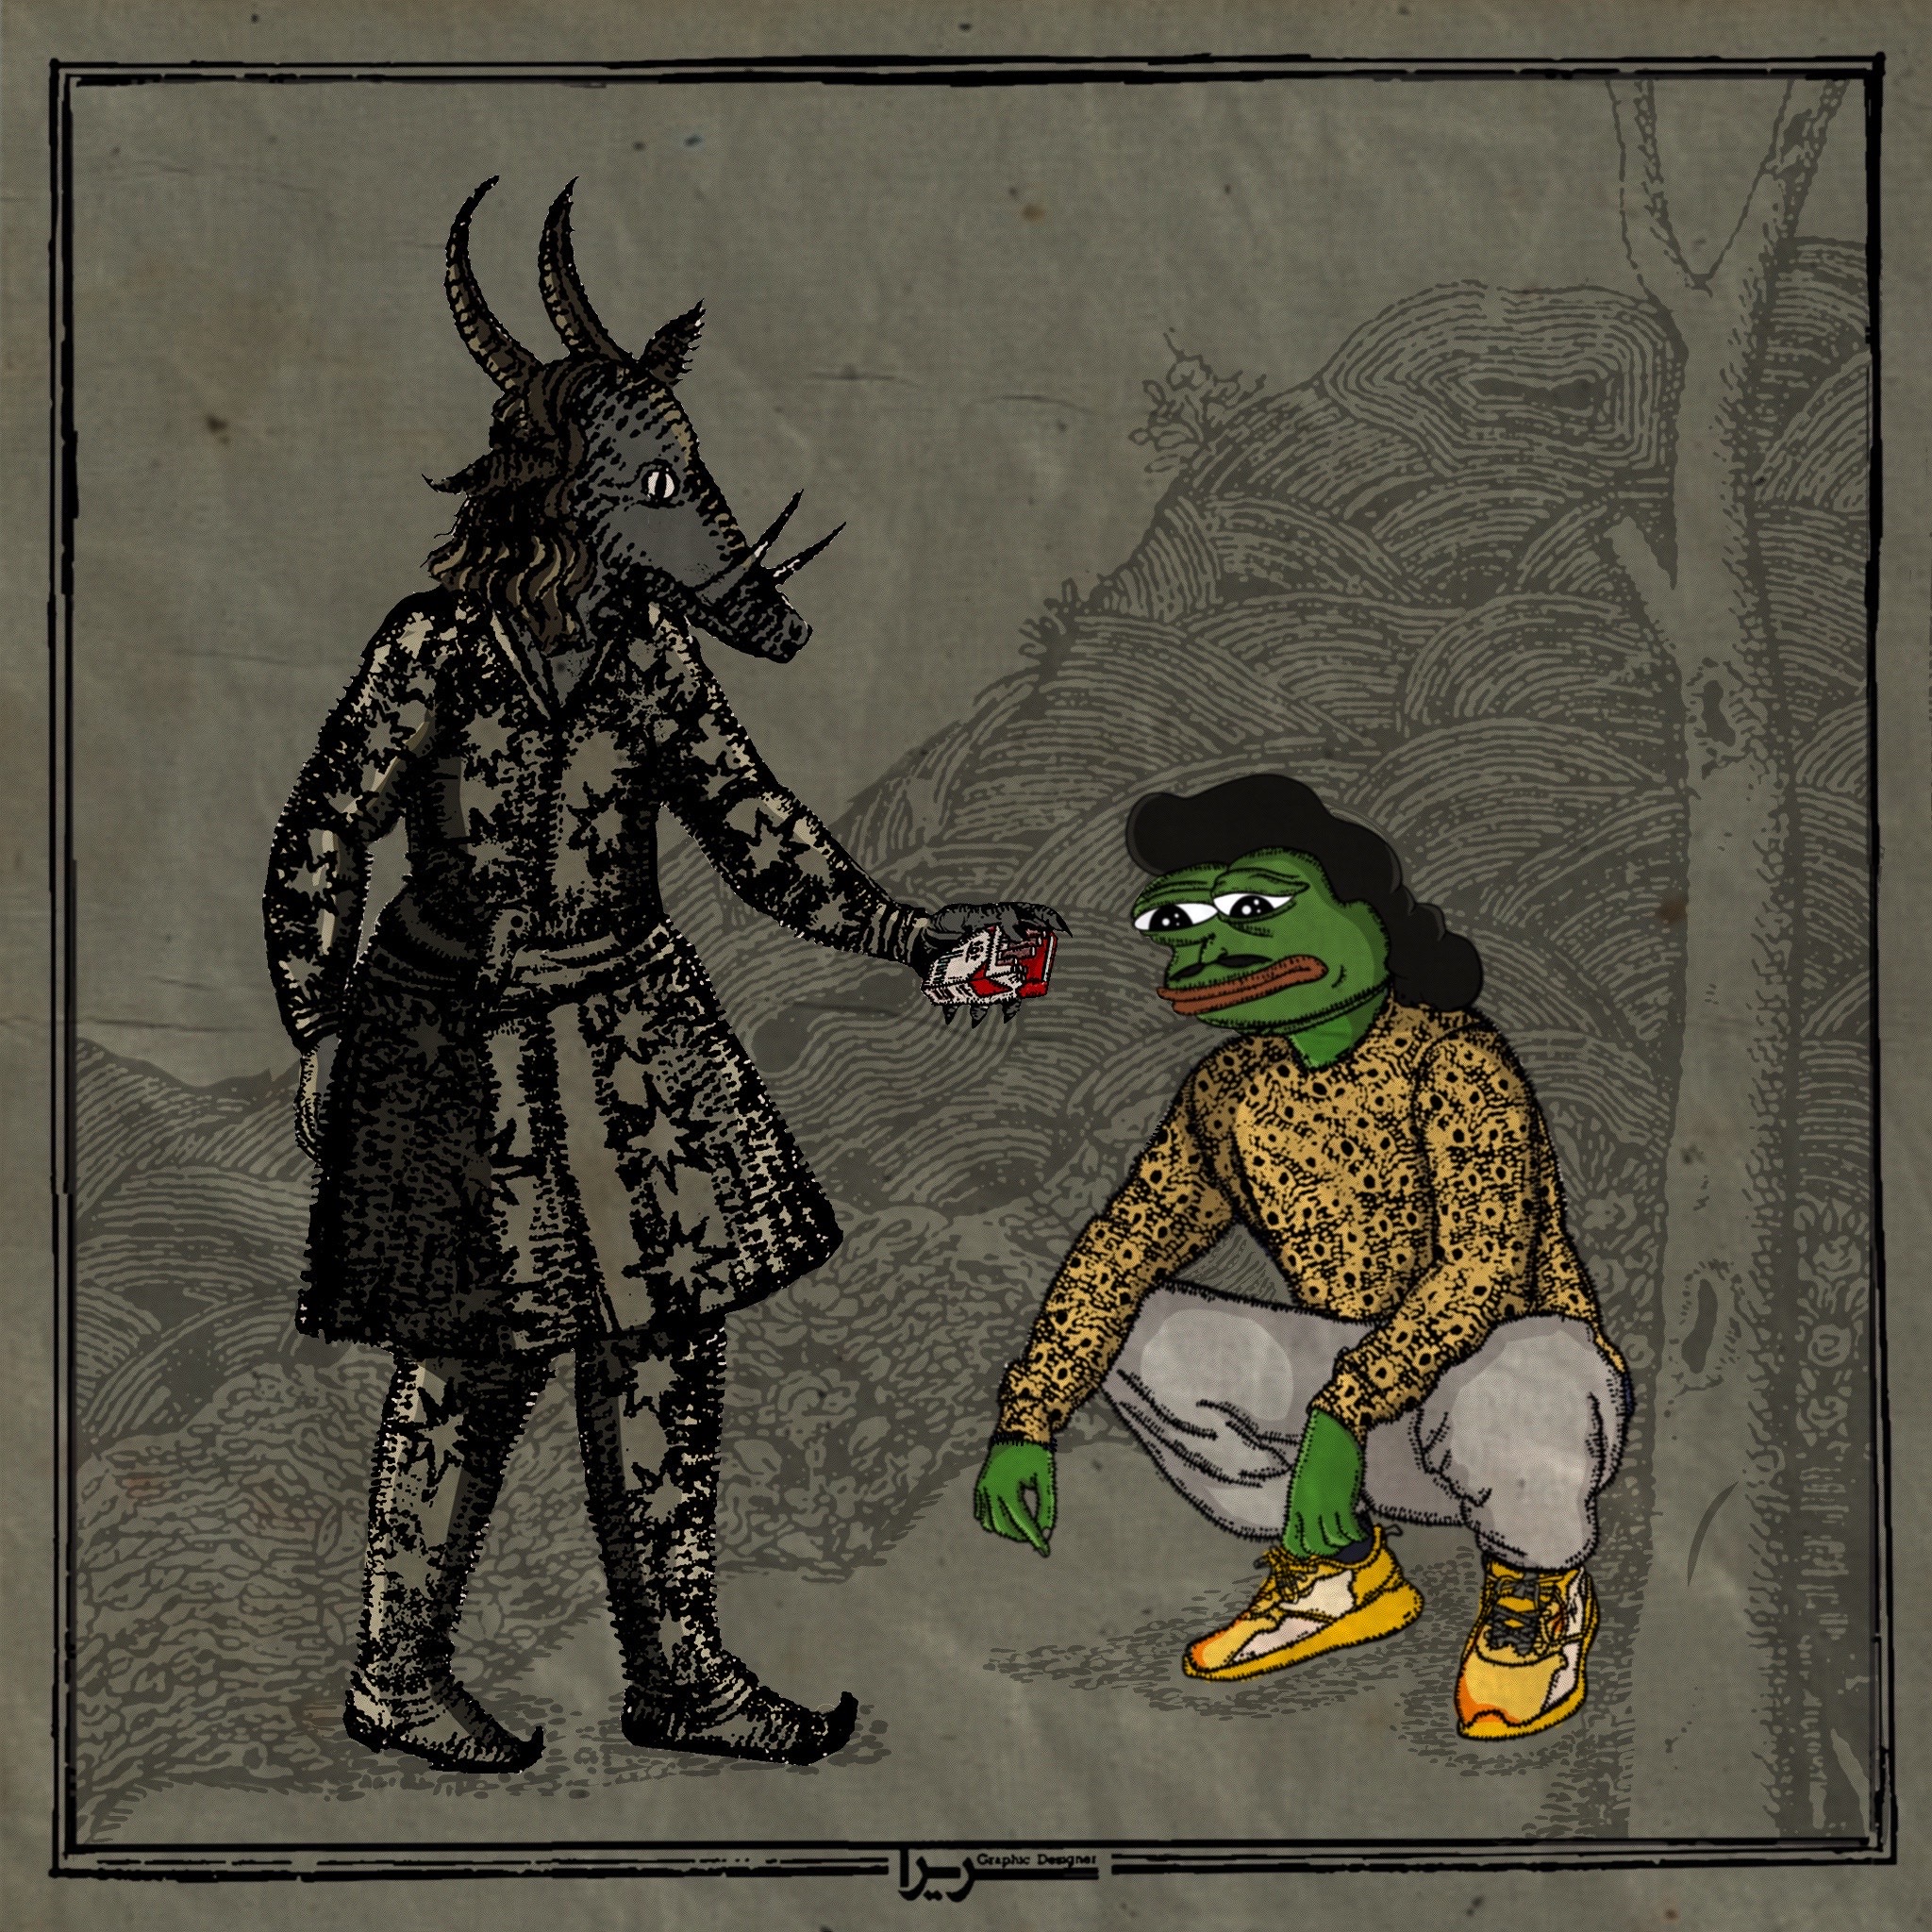 How Sawulak met Pepe